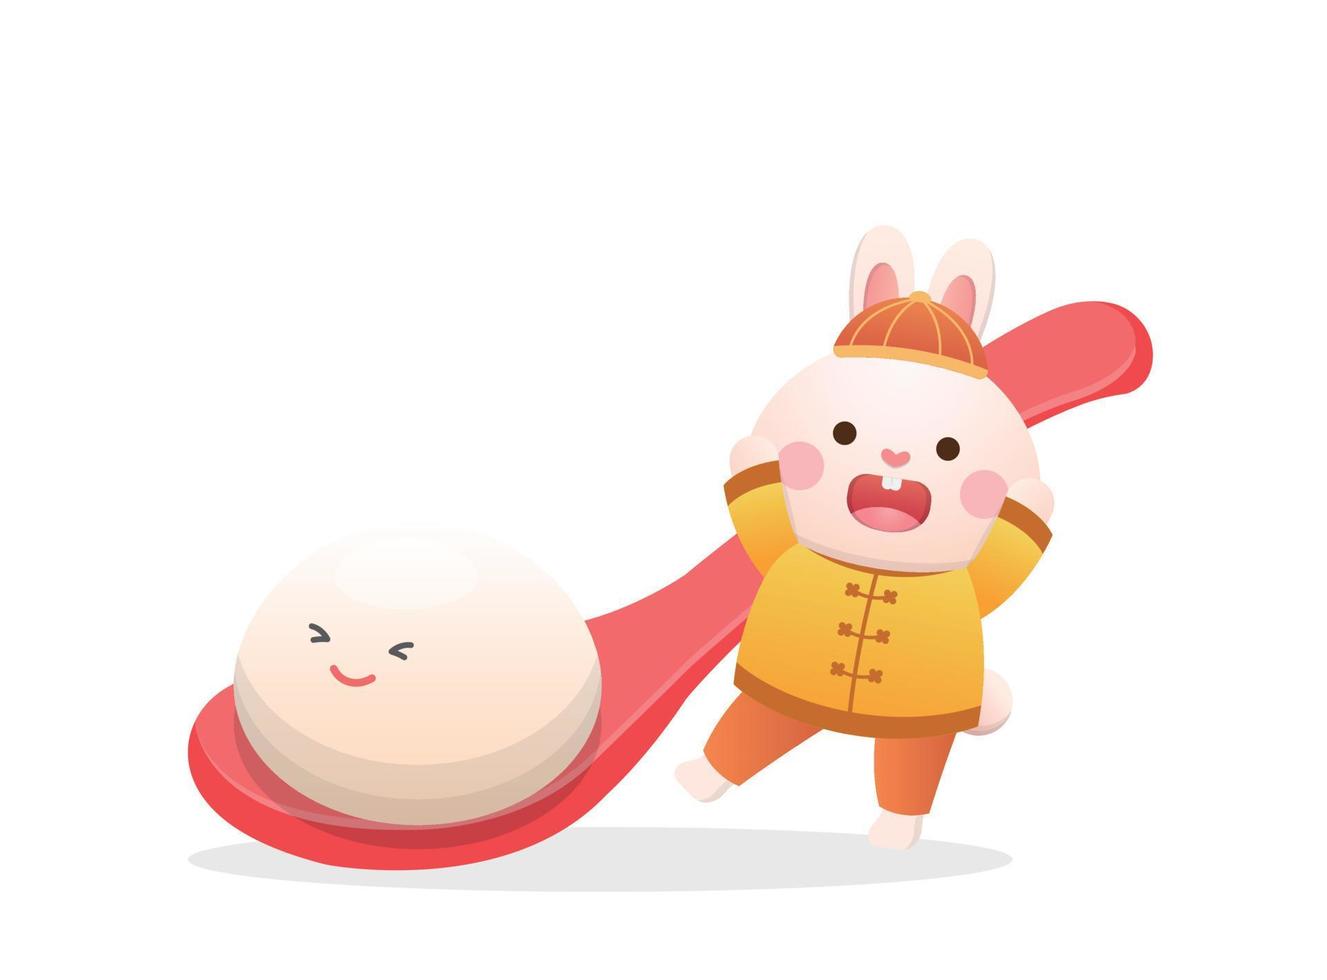 lindo personaje de conejo o mascota con bolas de arroz glutinoso, festival de linternas o solsticio de invierno, deliciosa comida dulce de arroz glutinoso en asia, estilo de dibujos animados juguetón y lindo vector